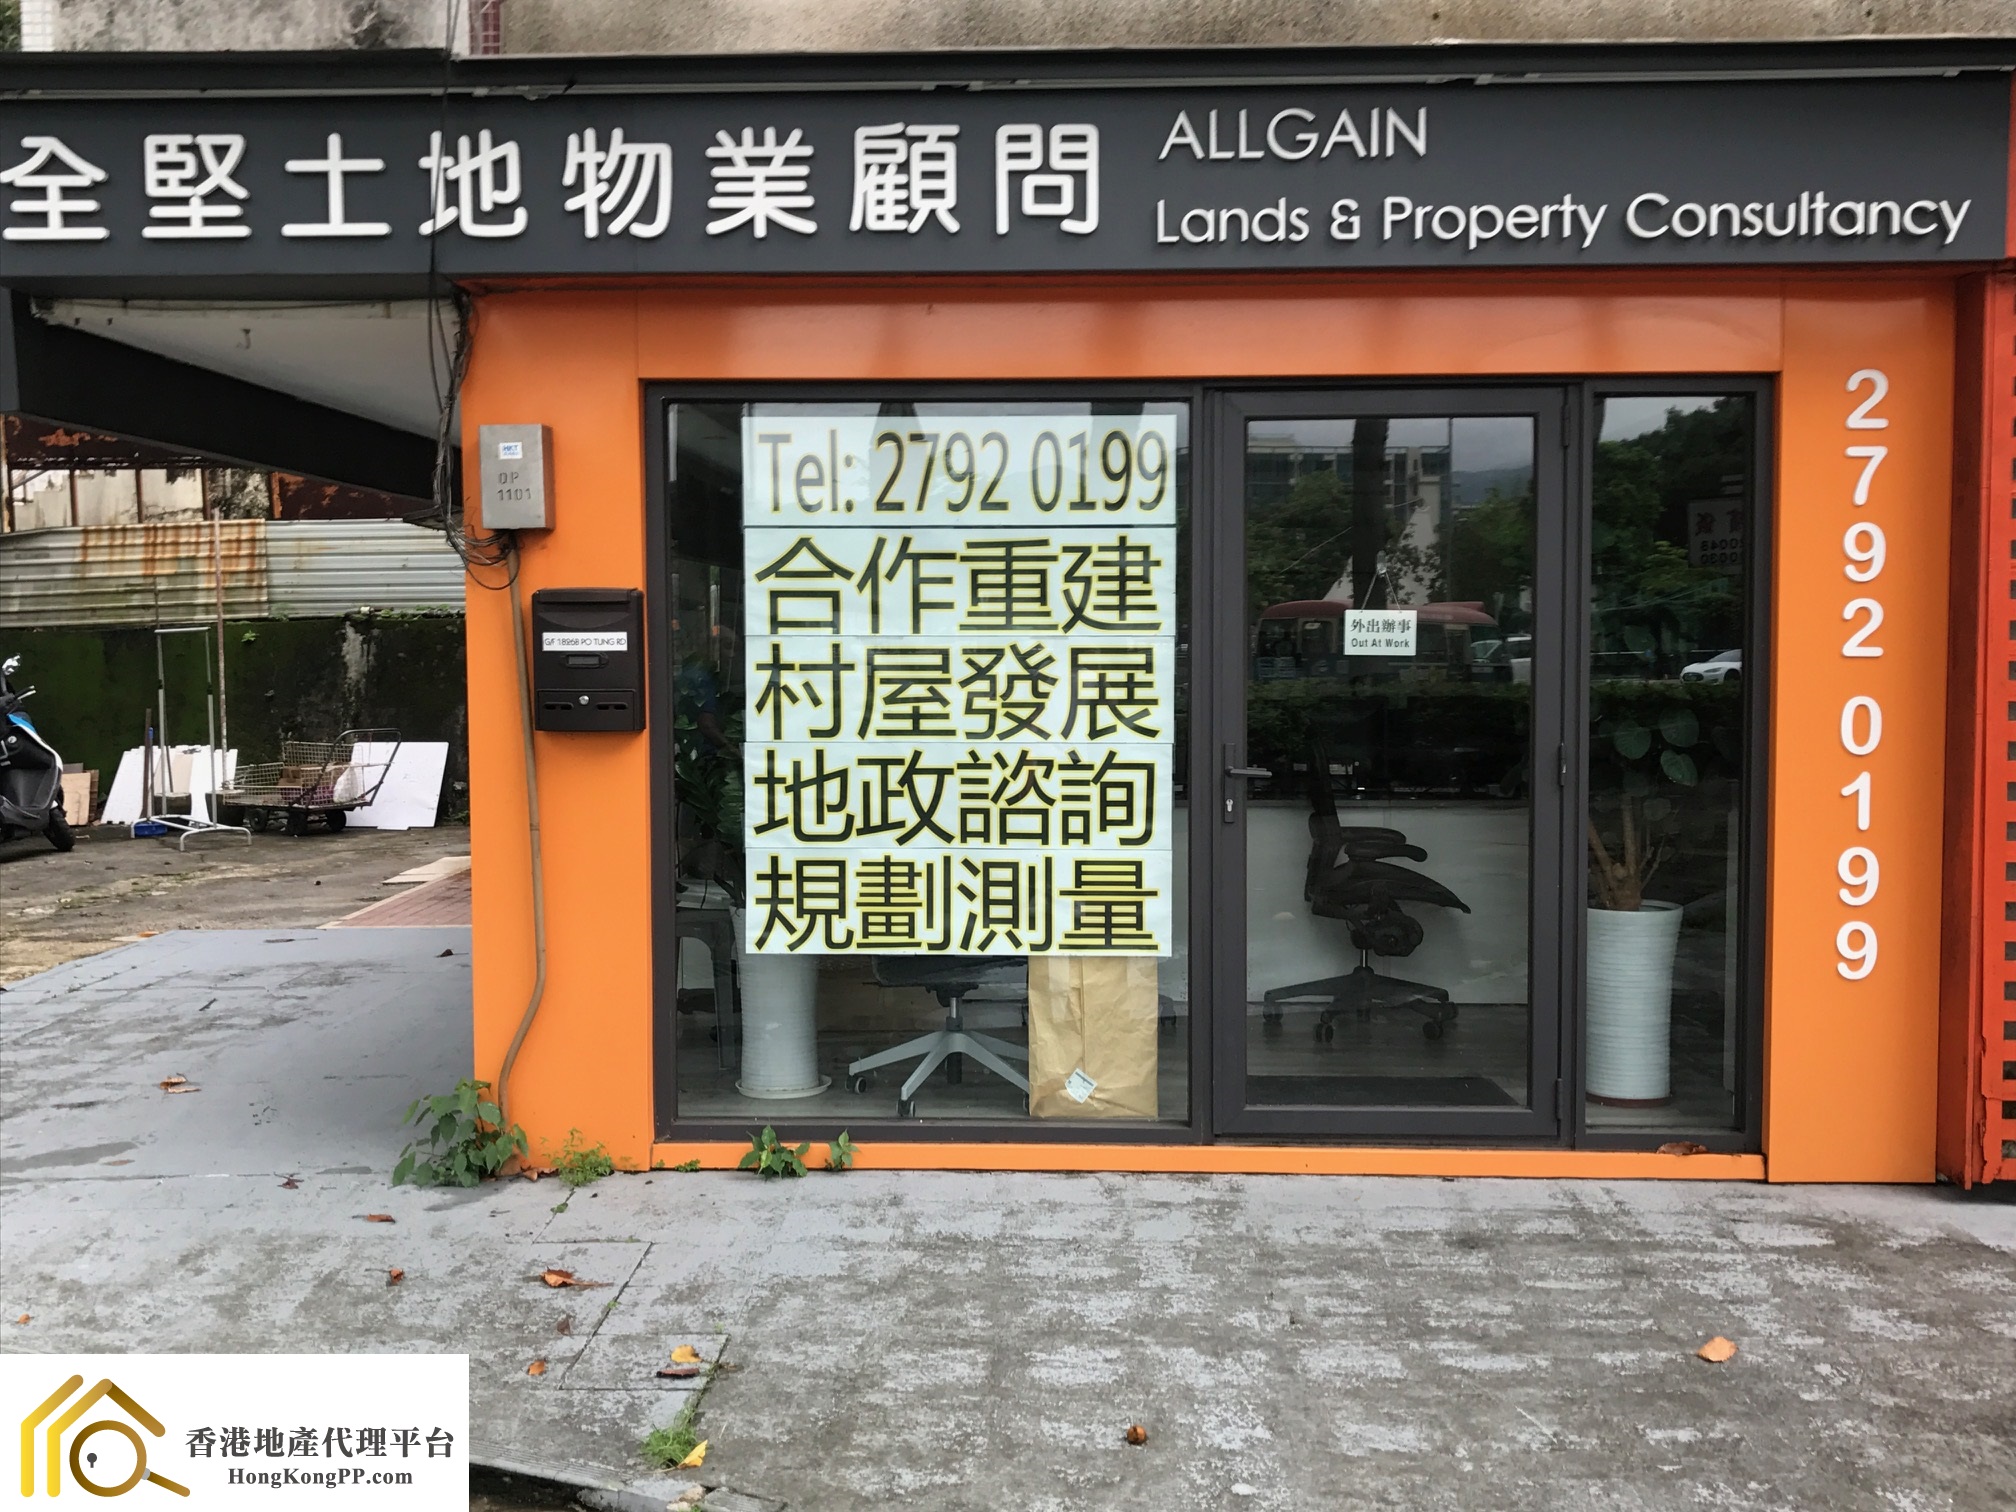 住宅地產代理: 全堅土地物業顧問 Allgain Lands & Property Consultancy Ltd